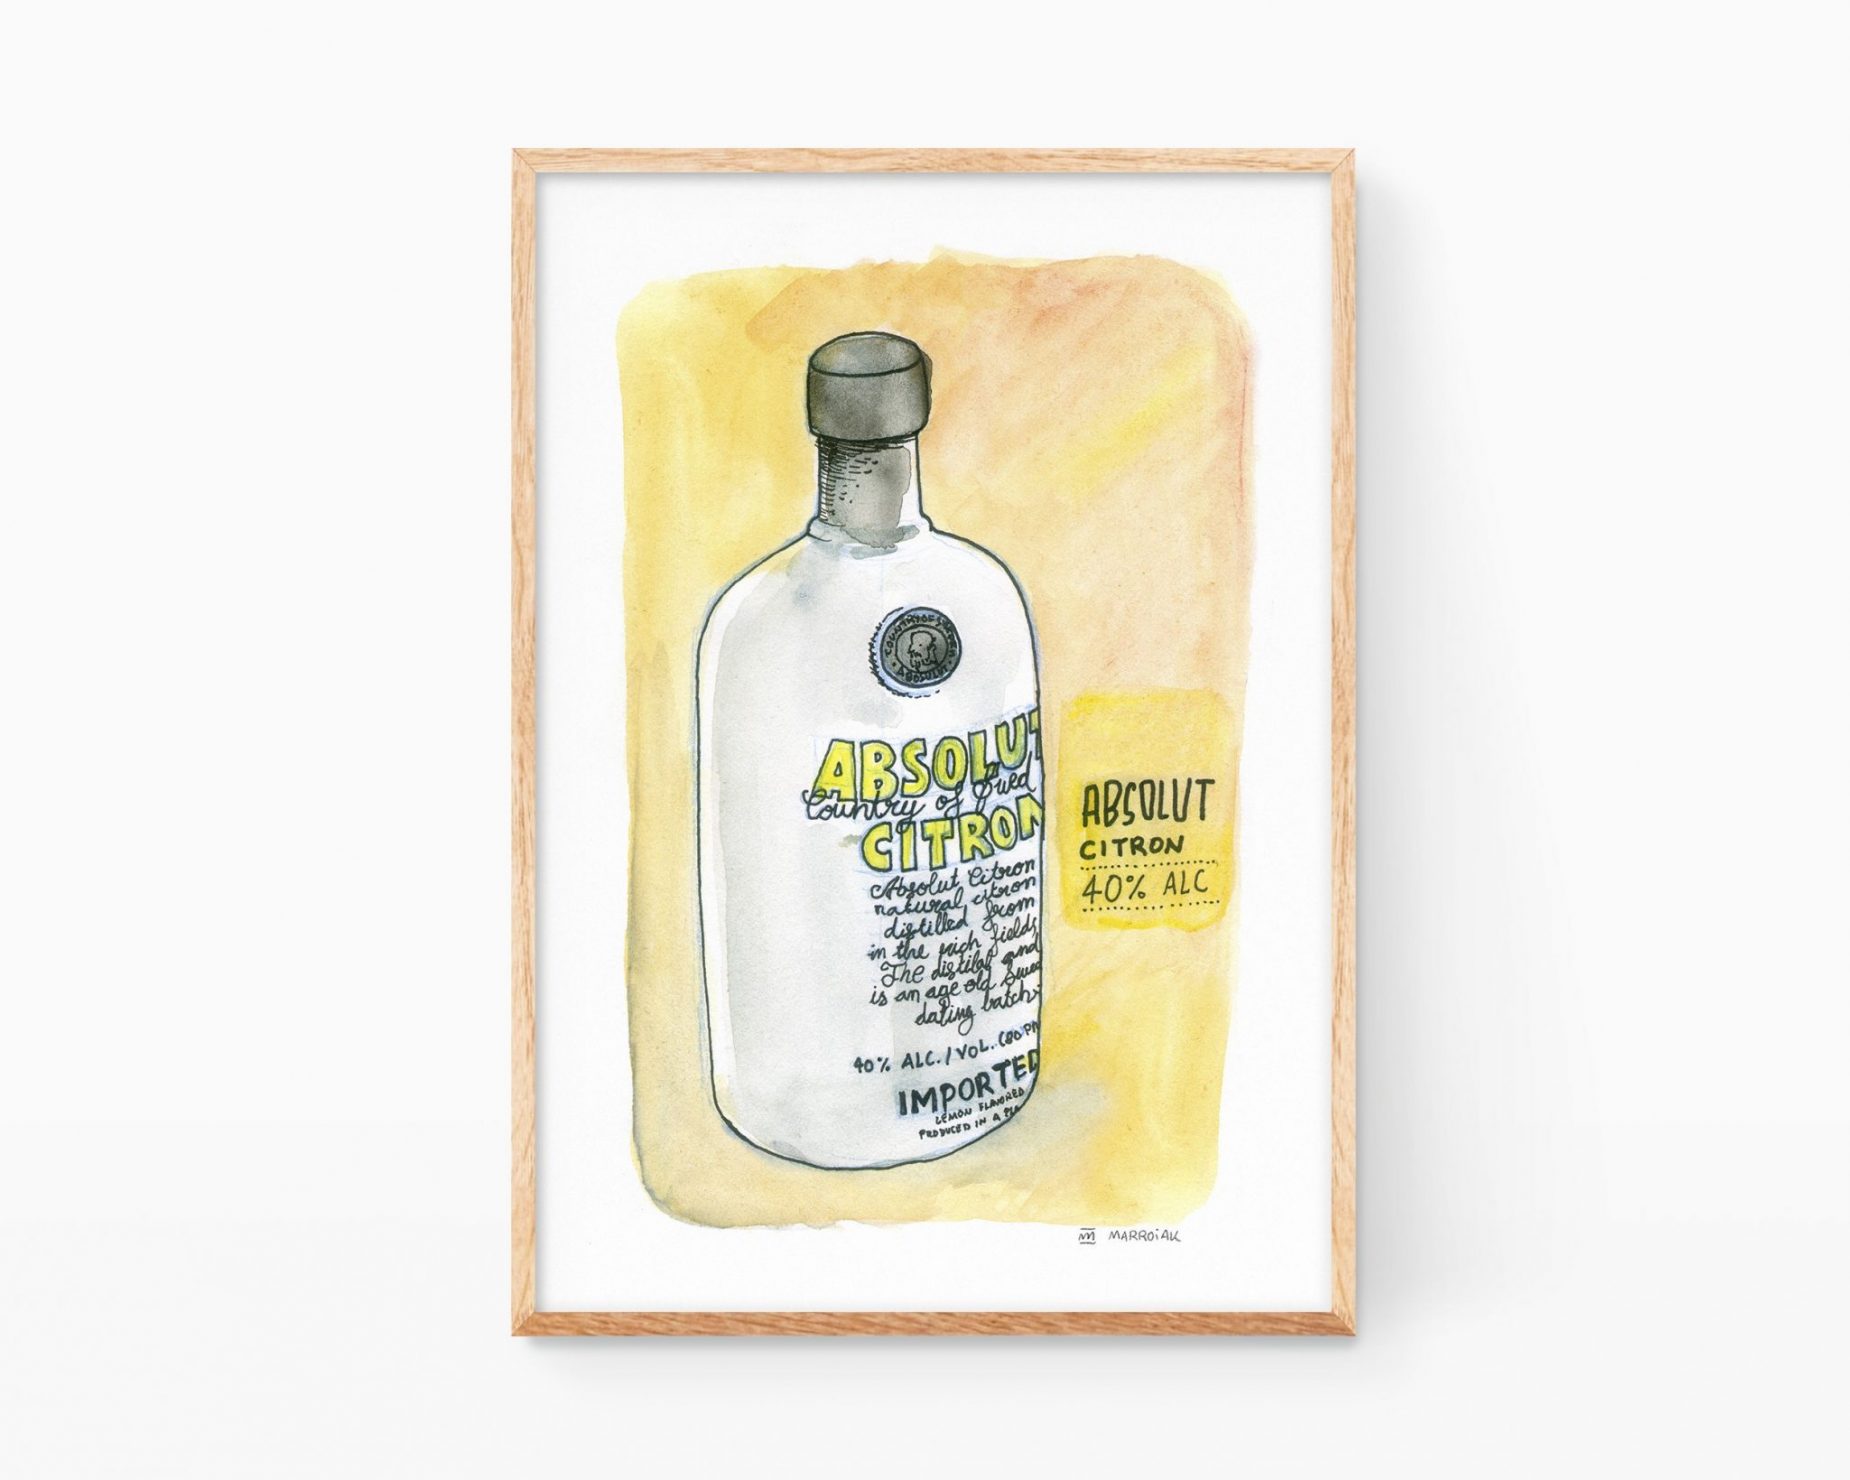 Lámina para decoración de cocinas con una ilustración en acuarela de una botella de vodka Absolut Citron. Dibujos cutres para enmarcar